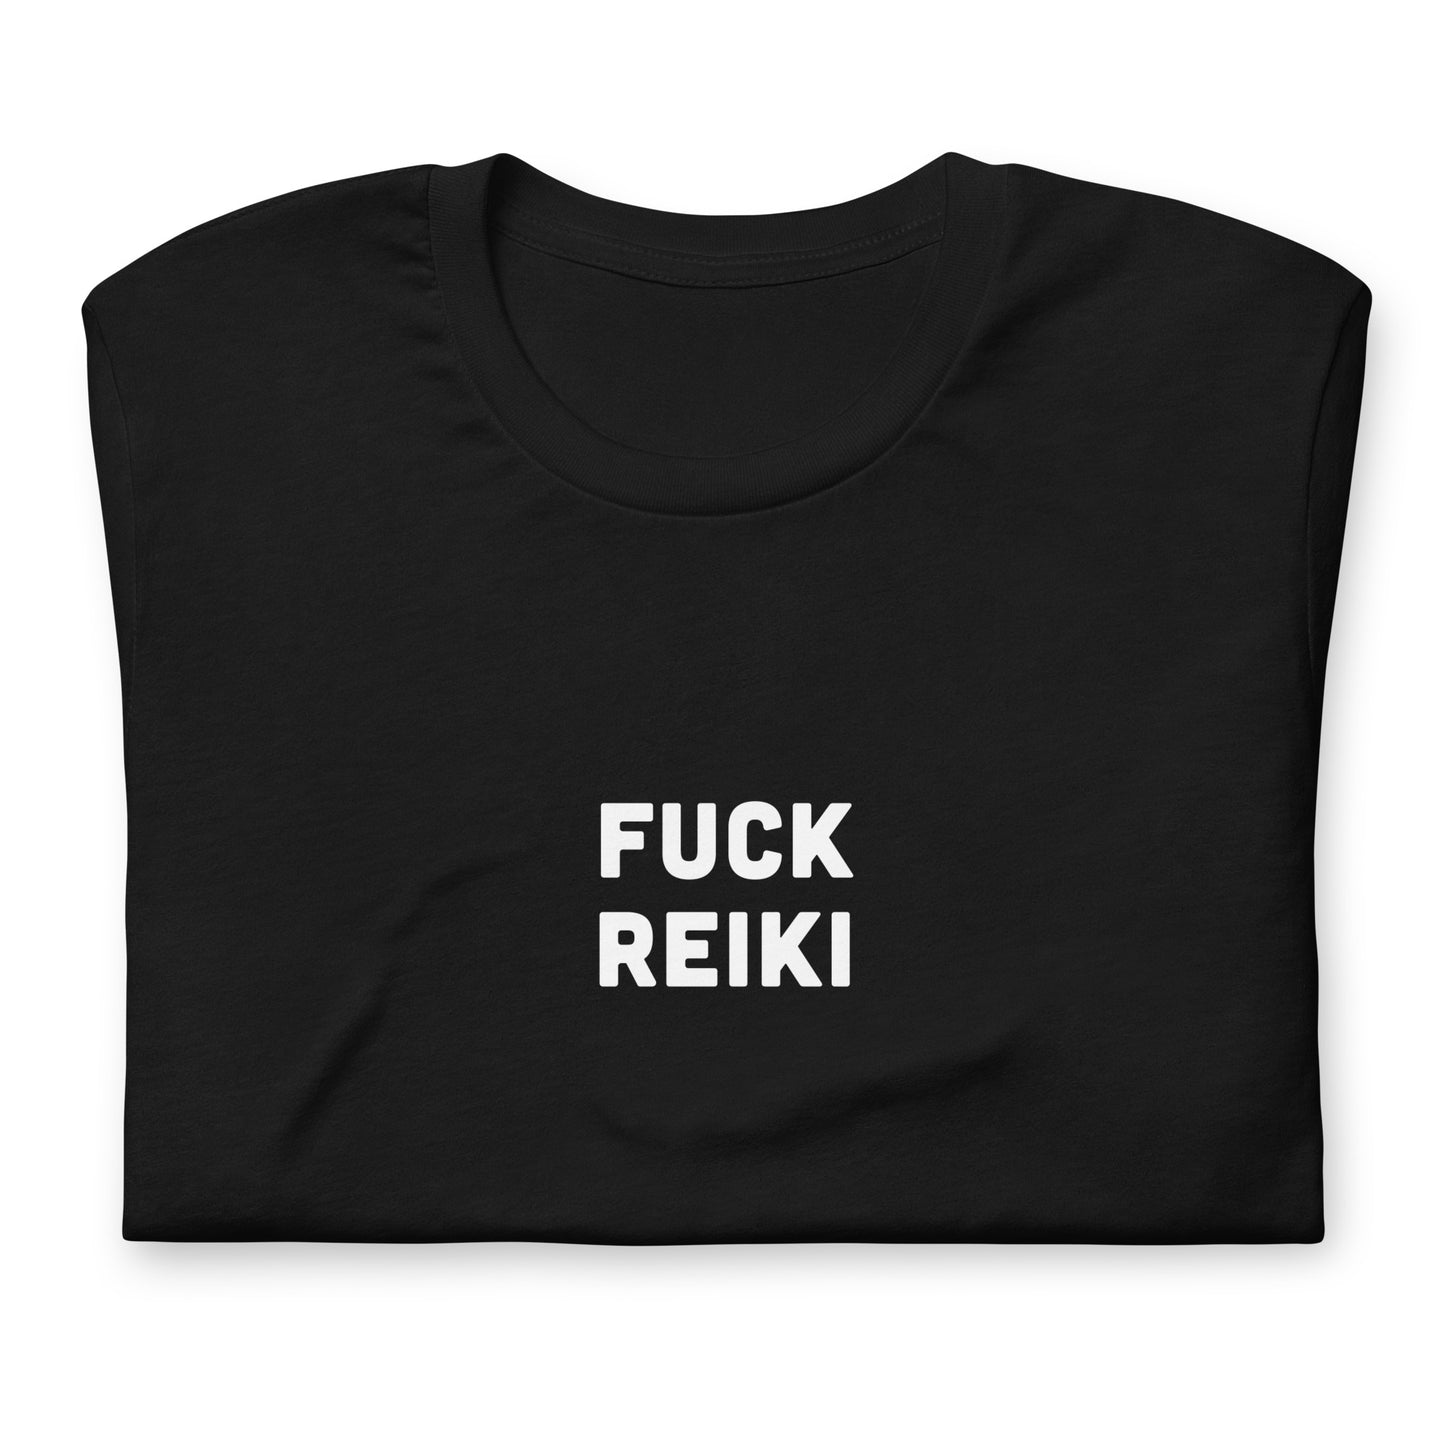 Fuck Reiki T-Shirt Size M Color Black